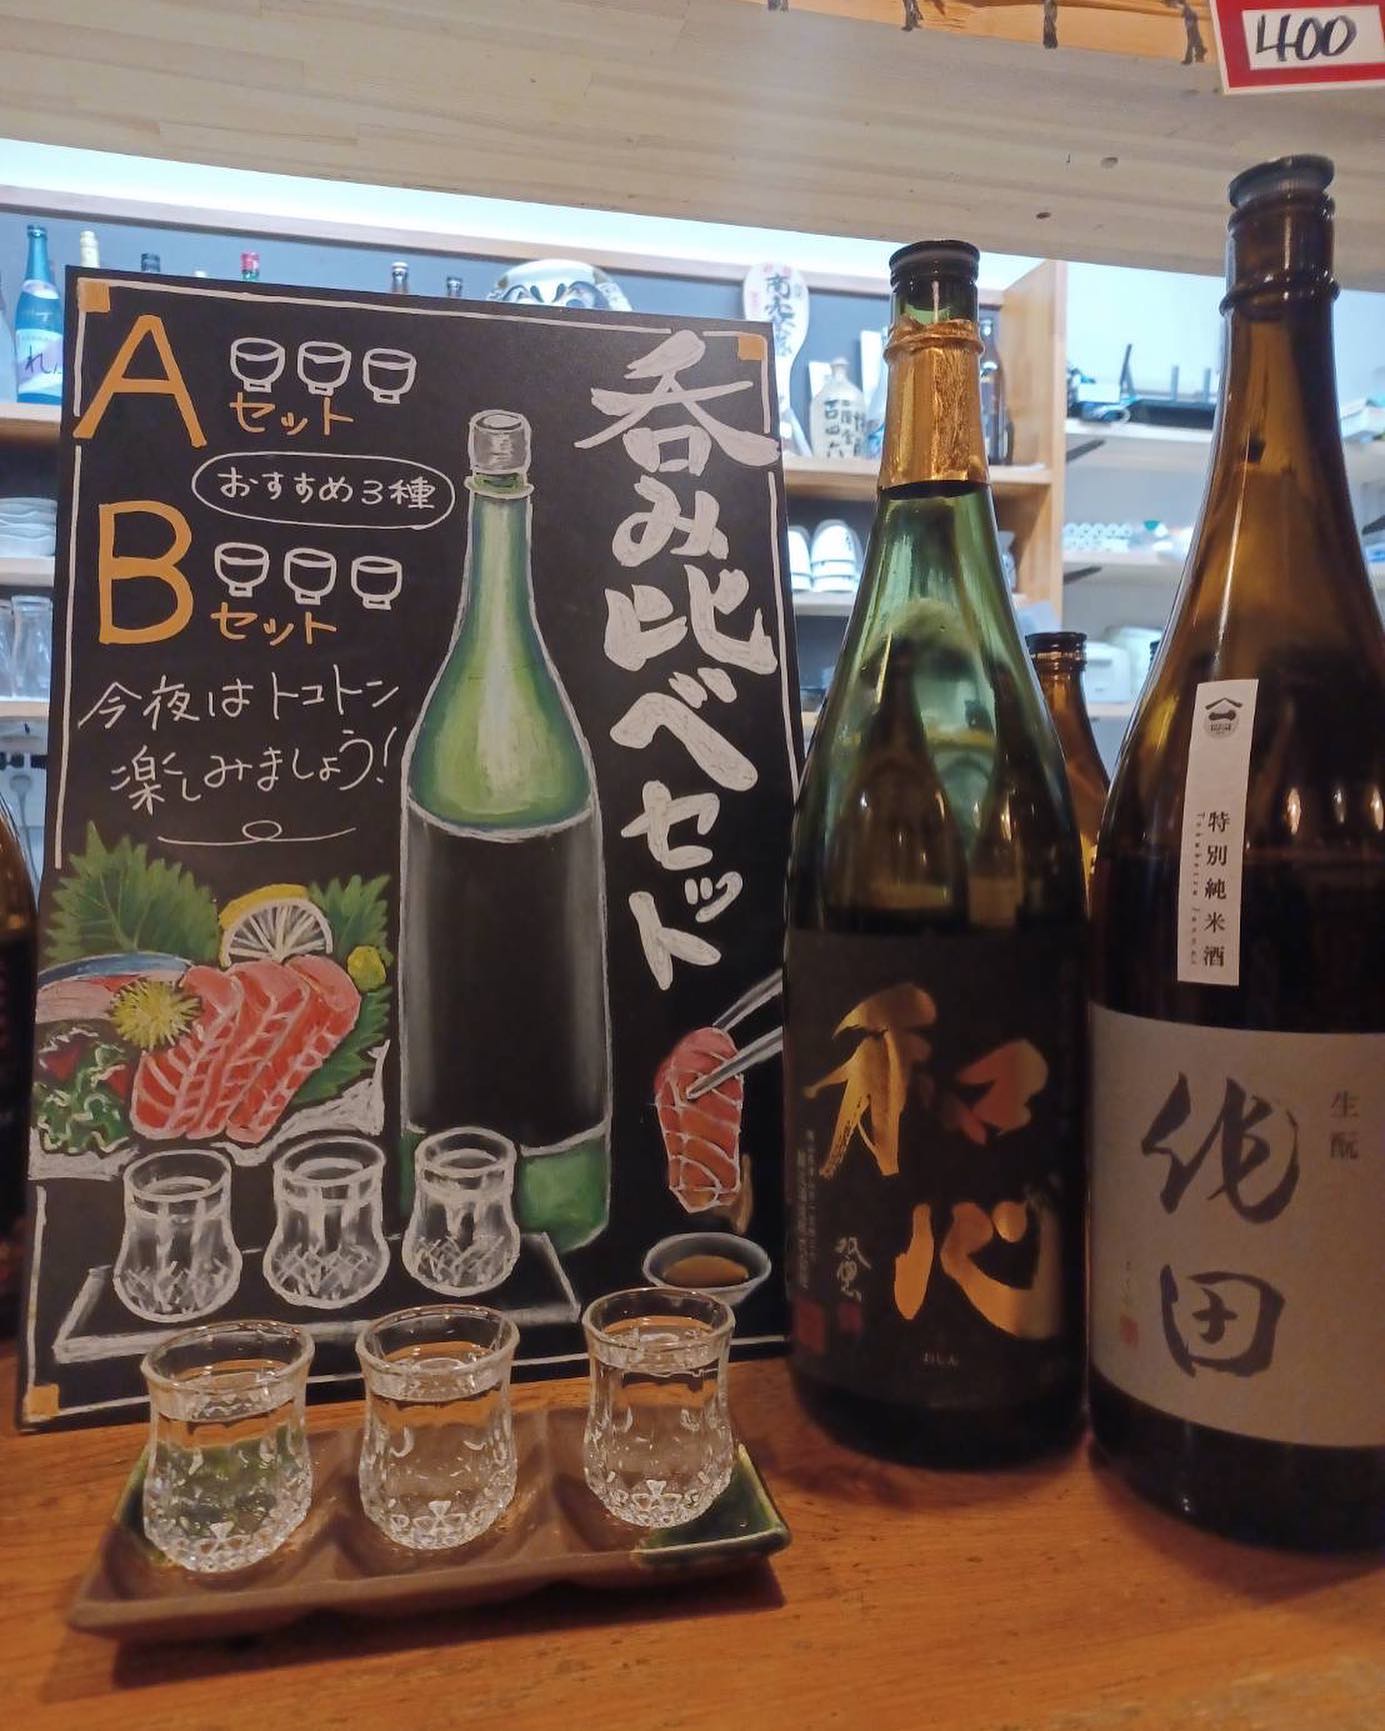 新しく日本酒の呑み比べセットを始めました！
お得に日本酒の呑み比べができるので、オススメです🫶🏻✧︎
是非お越しください！！